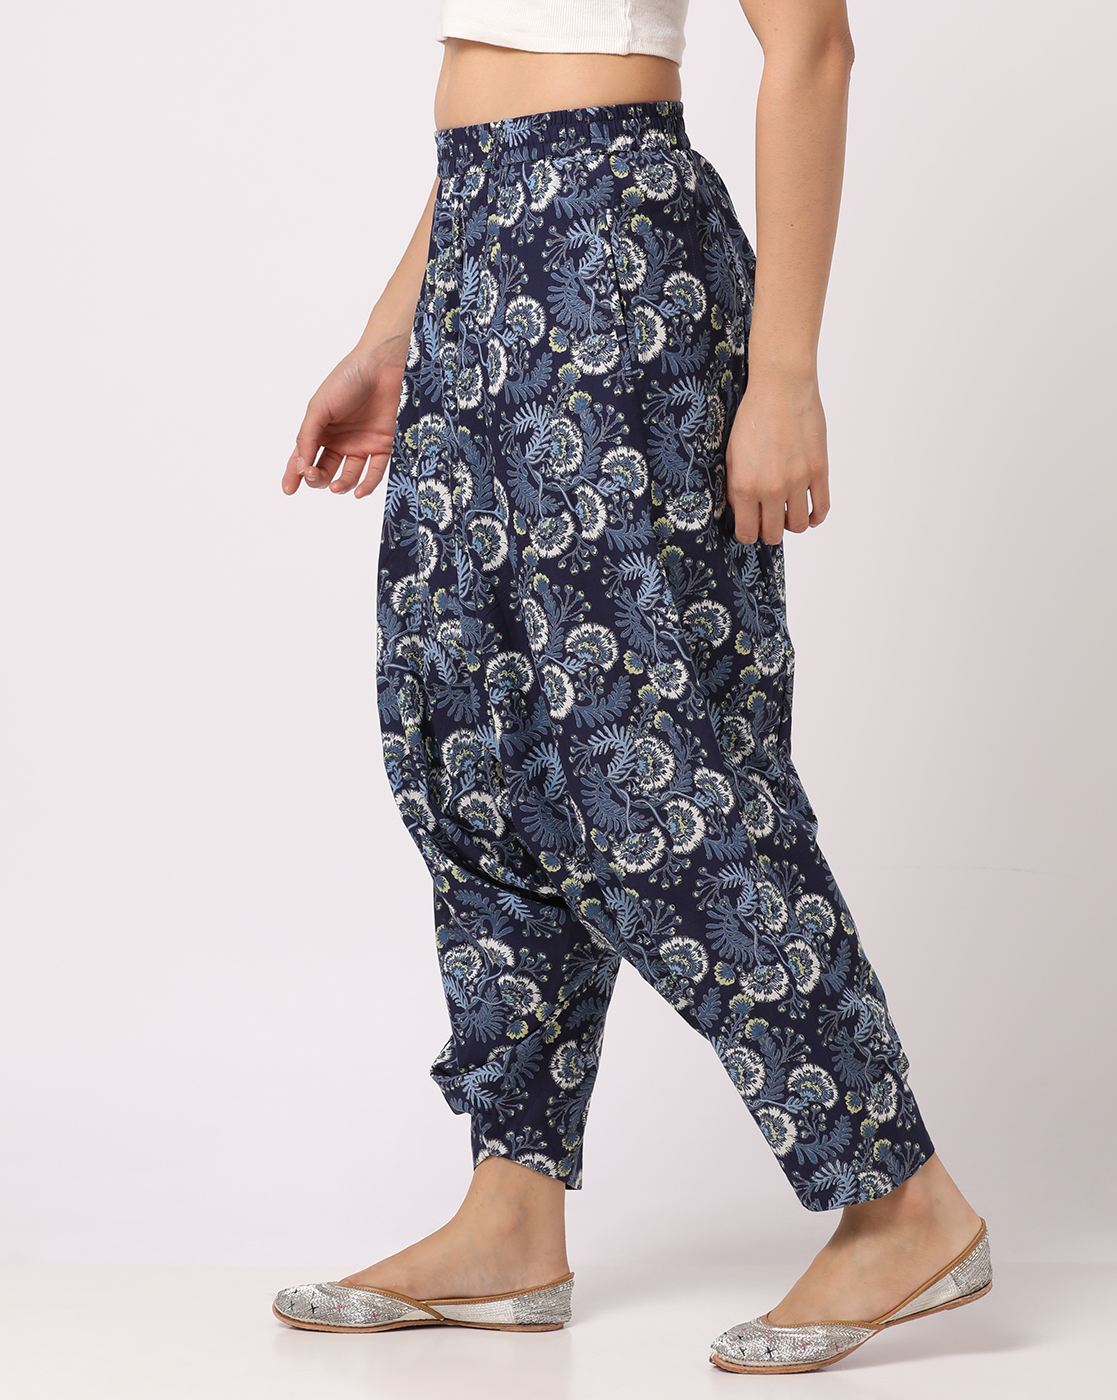 Buy Women's Plain Harem Pants Turquoise Blue, Turquoise, Medium-Large at  Amazon.in